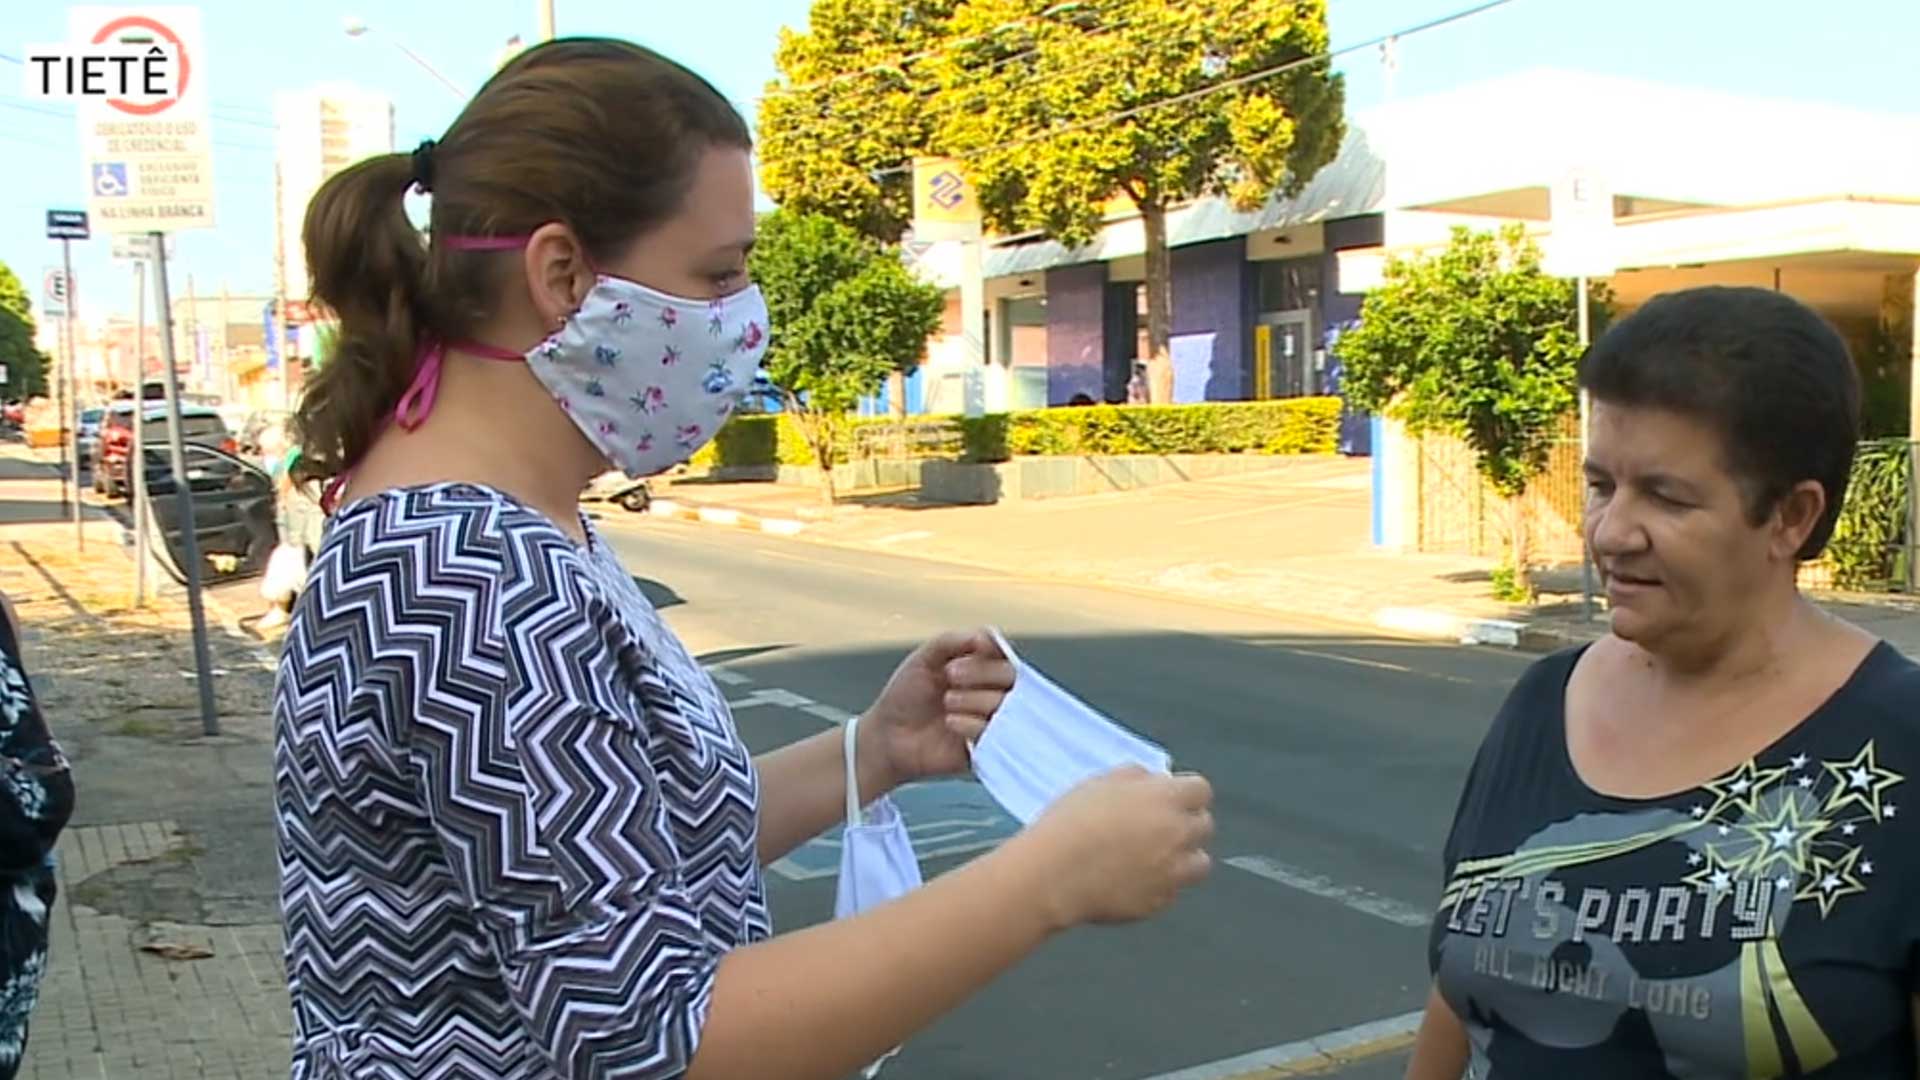 Pessoas sem máscara em Tietê podem pagar até R$276 mil em multa.